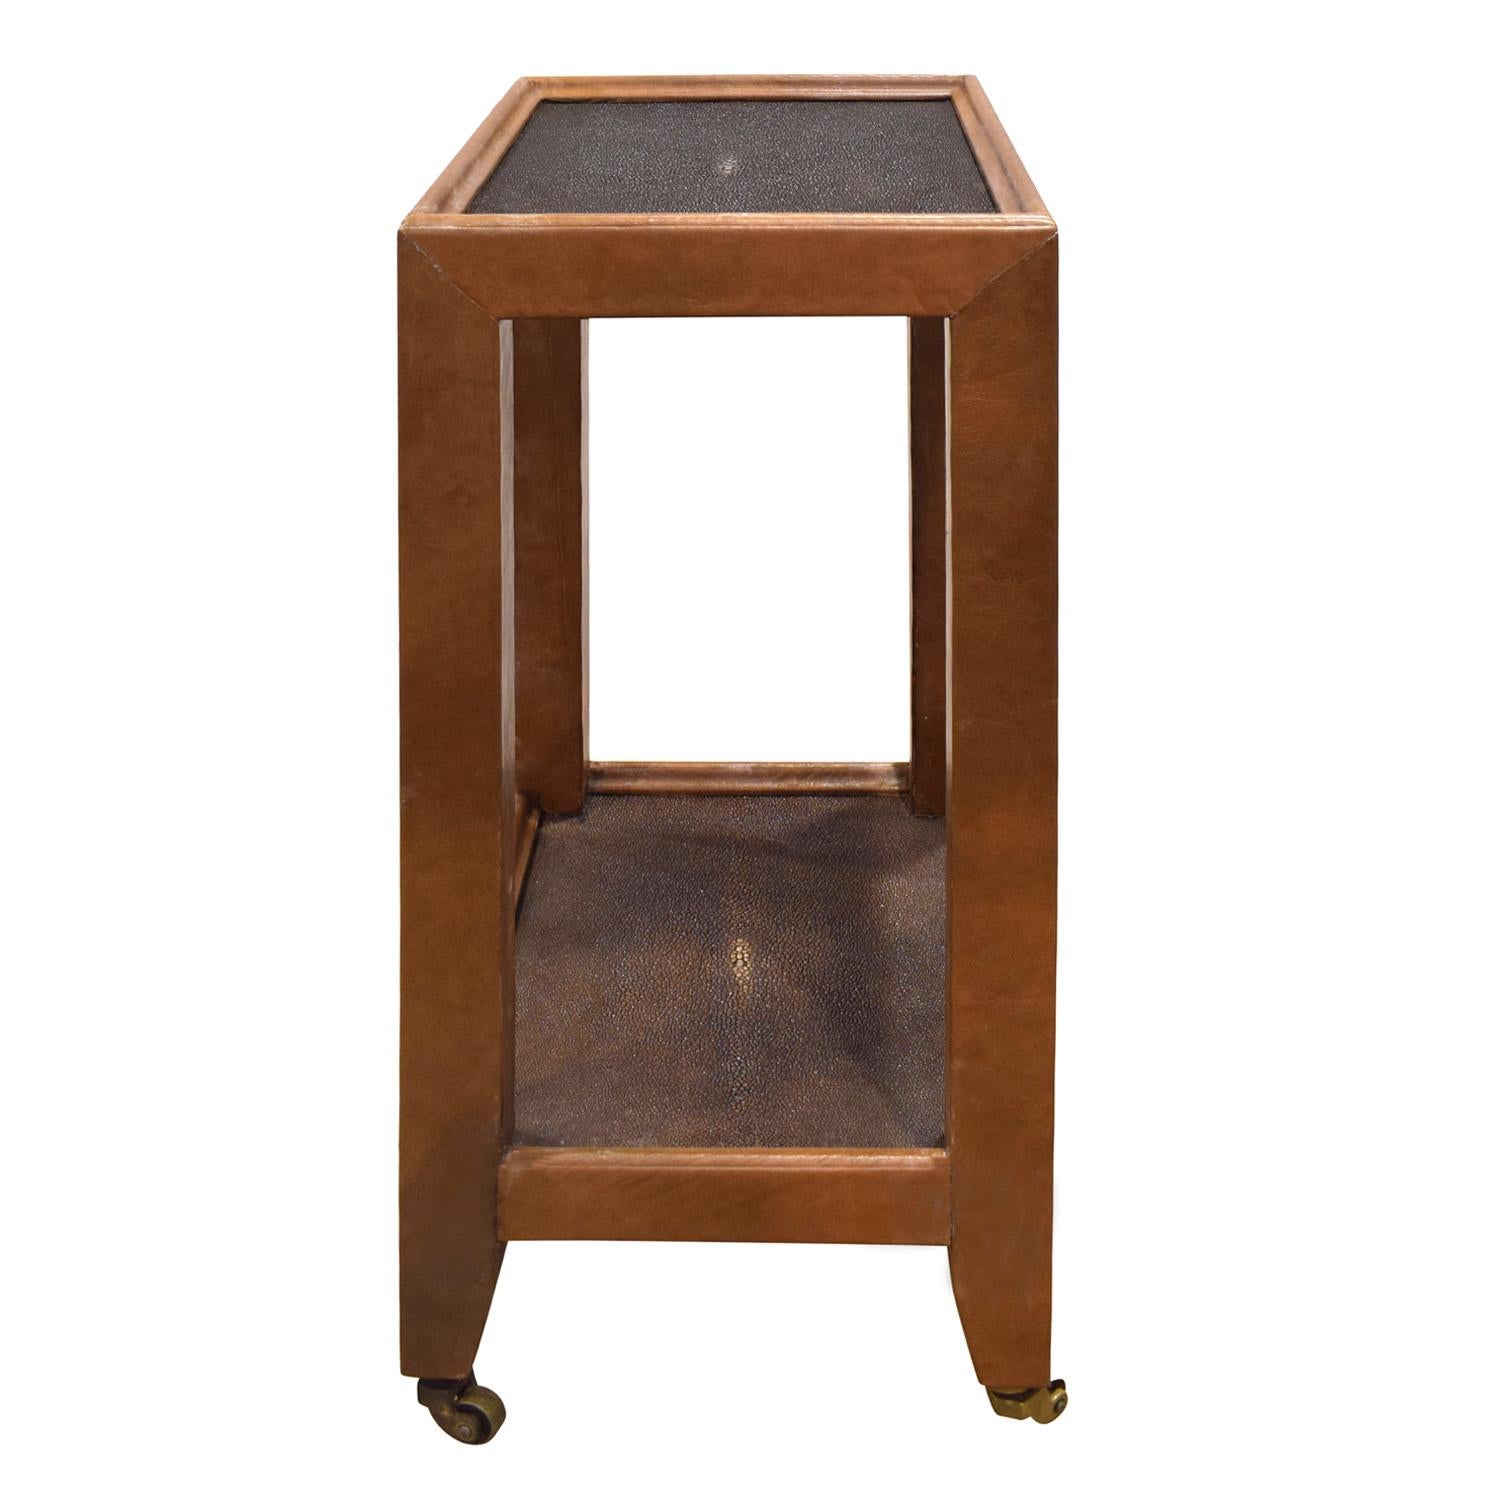 Exceptionnelle table d'appoint de style Table de Téléphone recouverte de cuir brun avec des plateaux en galuchat brun foncé sur roulettes en laiton par Karl Springer, américain des années 1980. Le fond est recouvert de daim assorti. L'artisanat